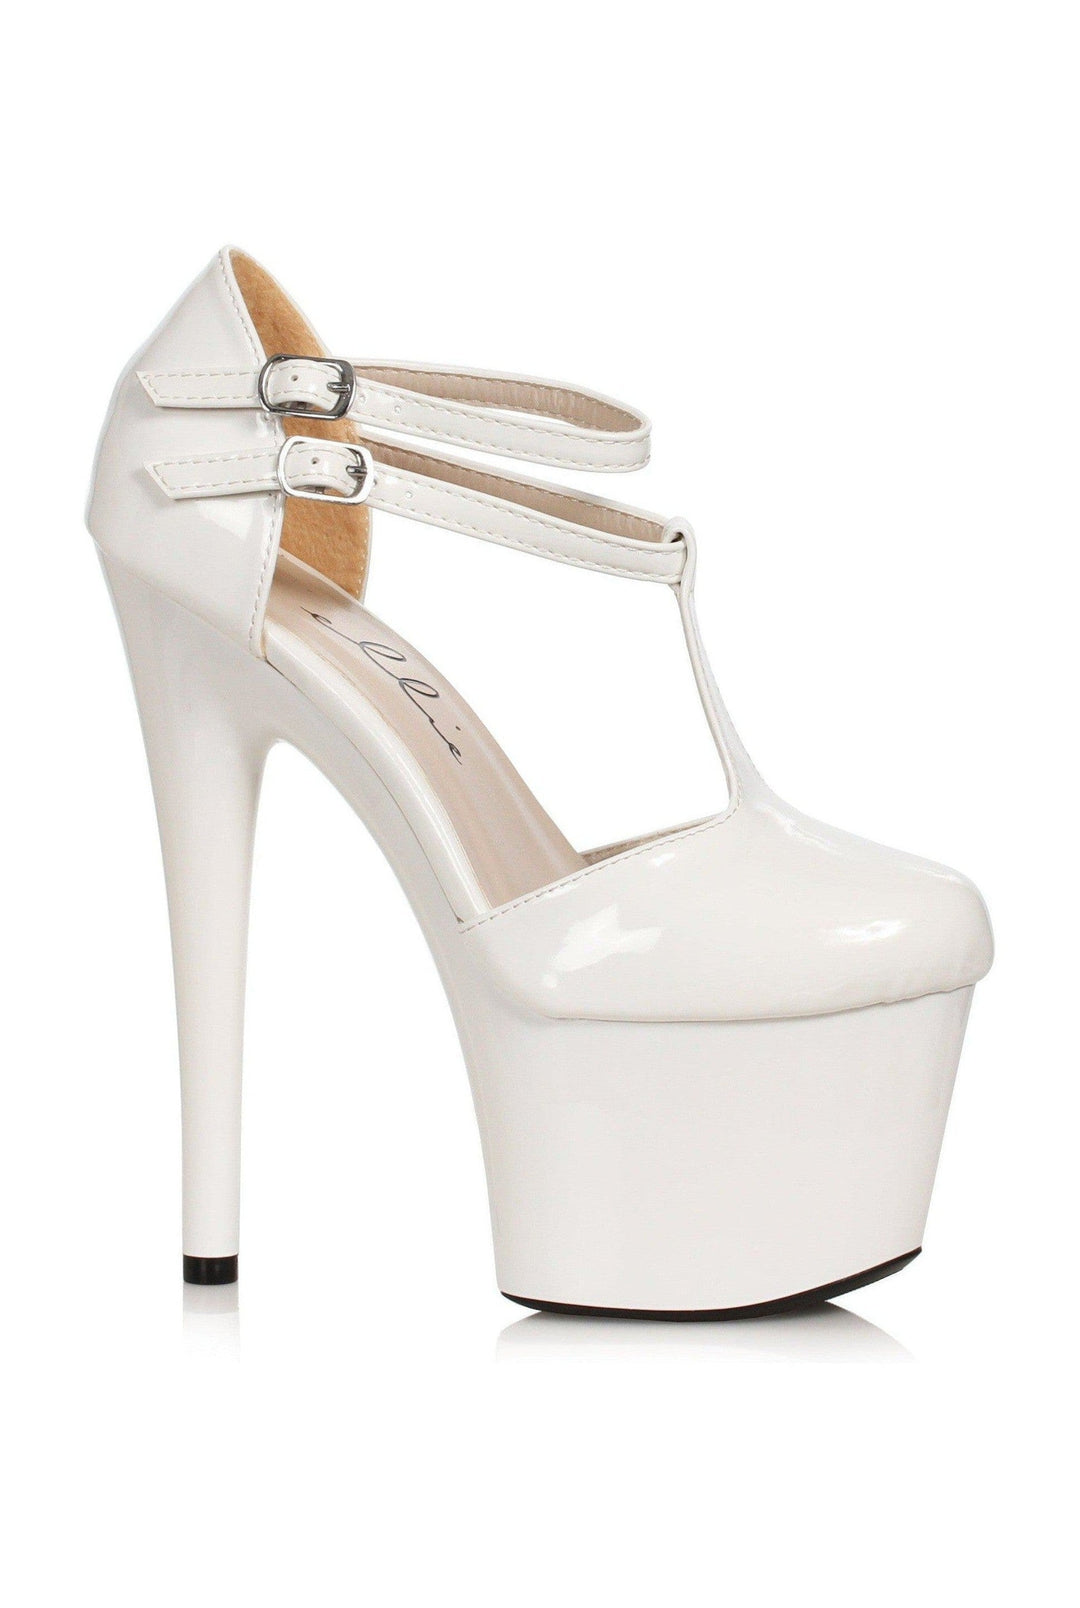 Ellie Shoes White Pumps Platform Stripper Shoes | Buy at Sexyshoes.com